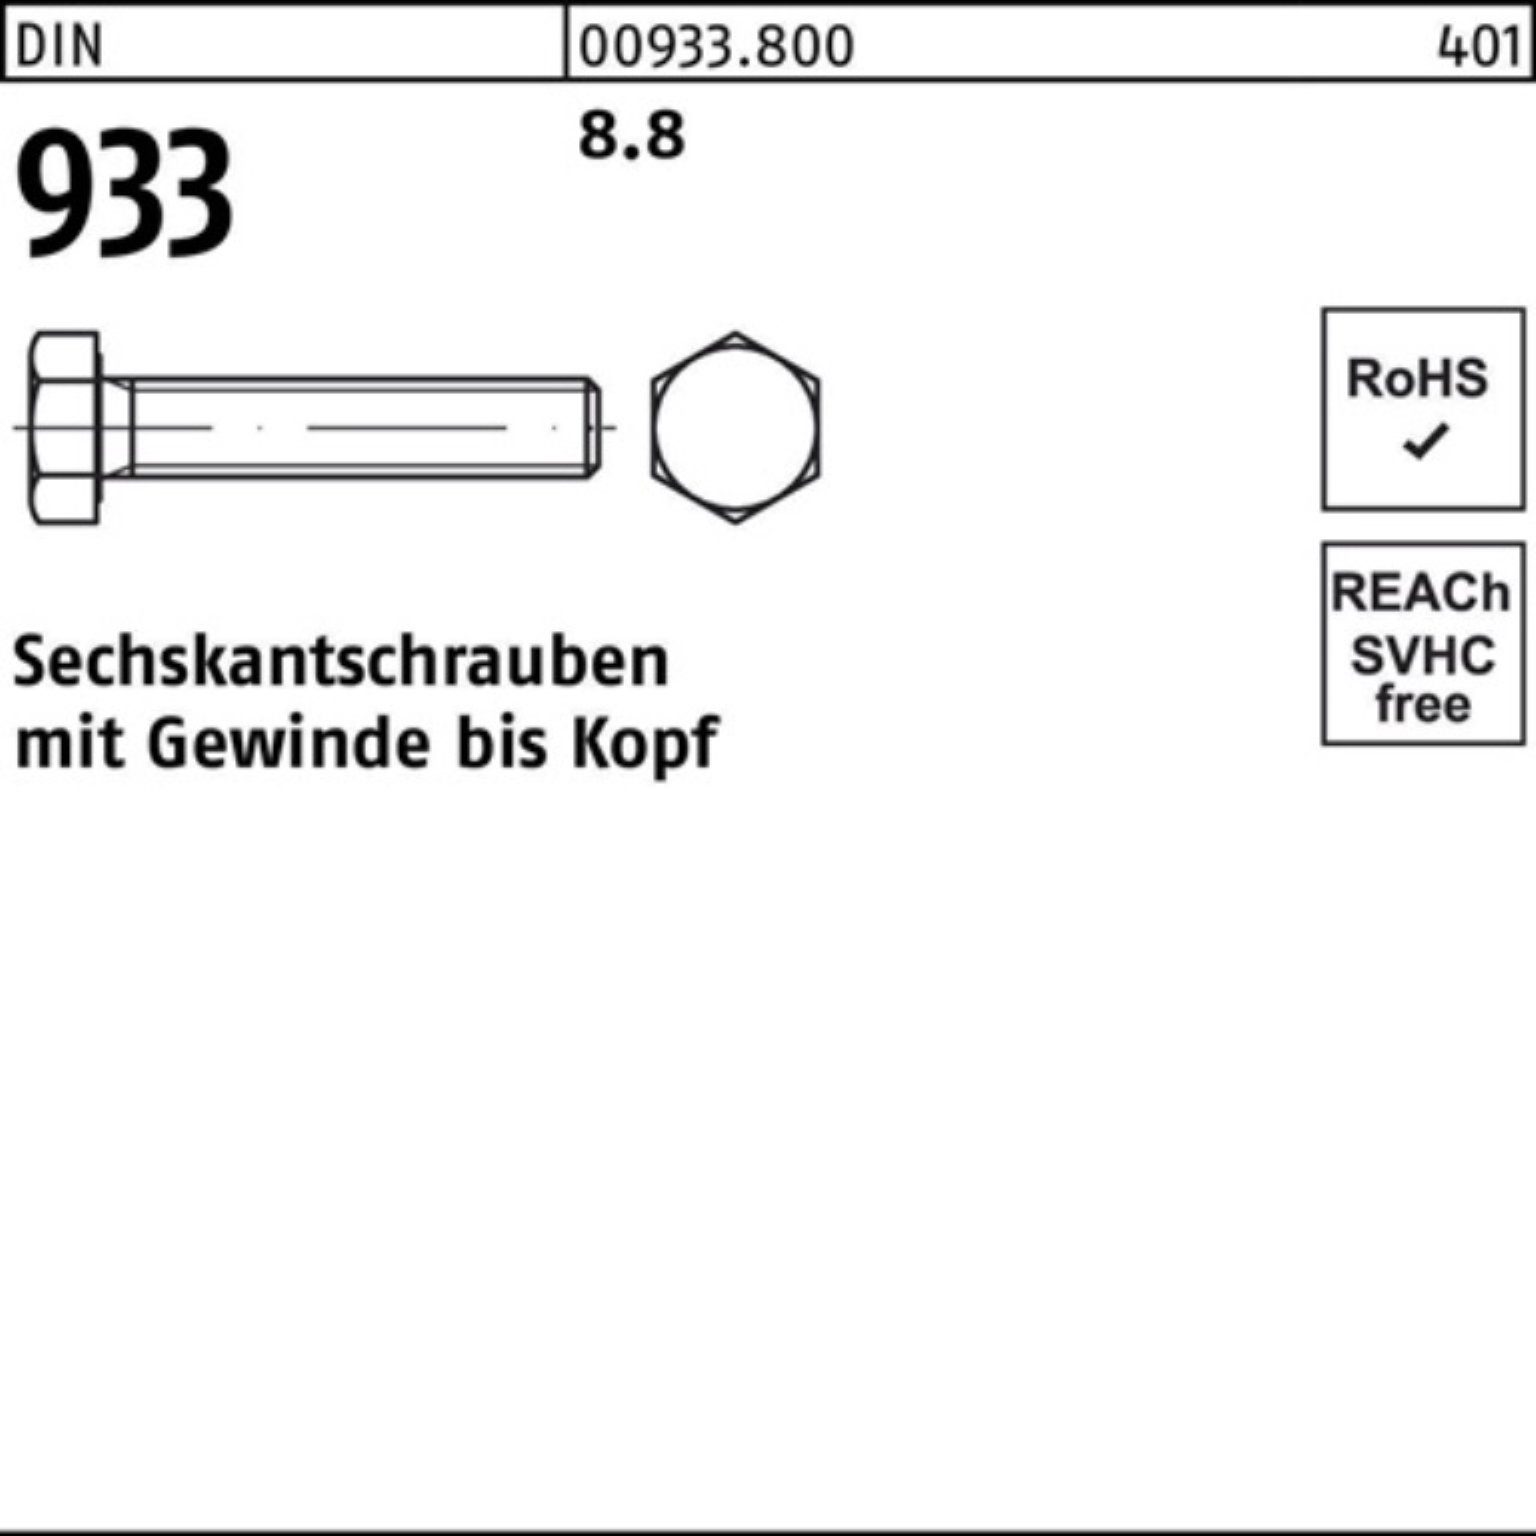 Reyher Sechskantschraube M42x 1 Stück 100 933 DIN 100er VG 933 8.8 Sechskantschraube Pack DIN